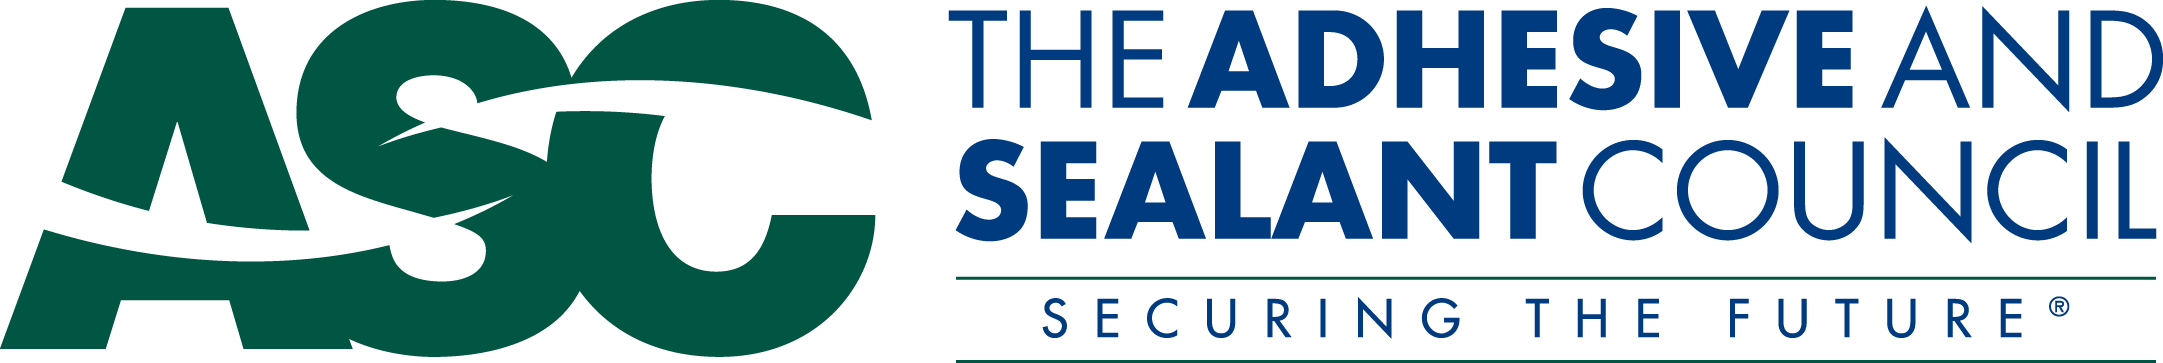 Adhesive and Sealant Council Logo